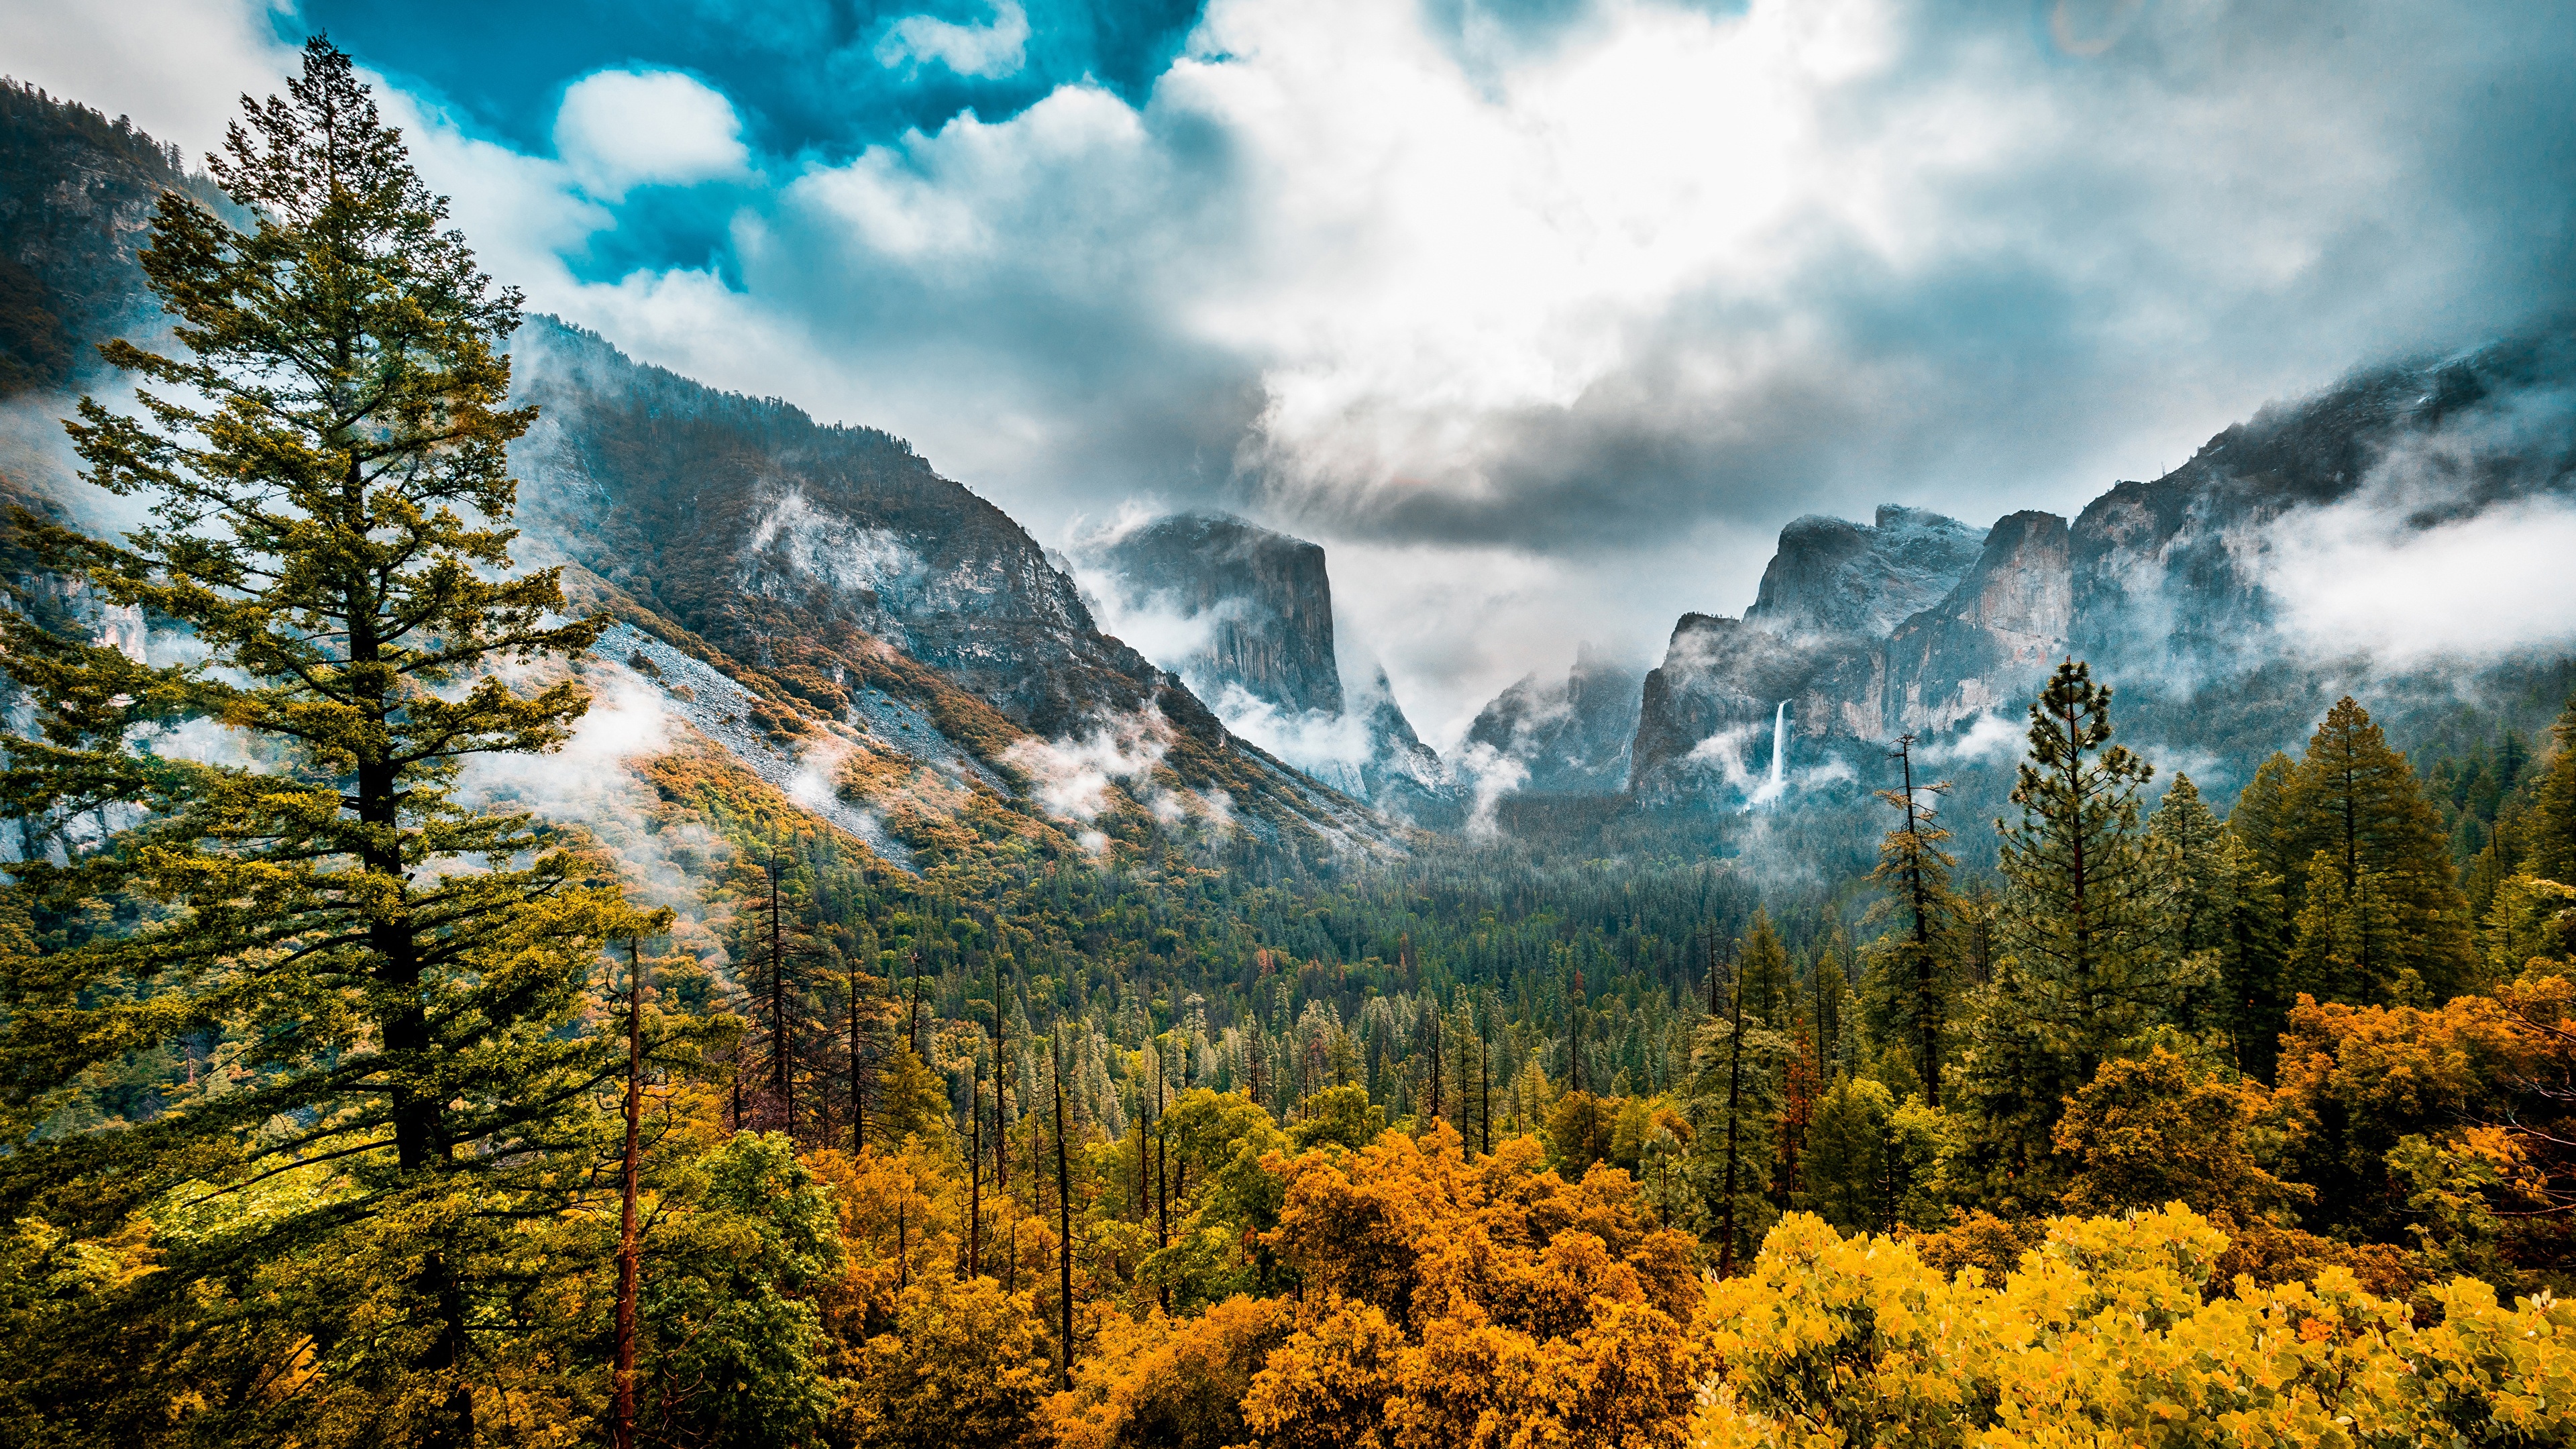 壁紙 3840x2160 アメリカ合衆国 森林 秋 風景写真 Sierra Nevada 木 ヨセミテ国立公園 雲 カリフォルニア州 谷 自然 ダウンロード 写真